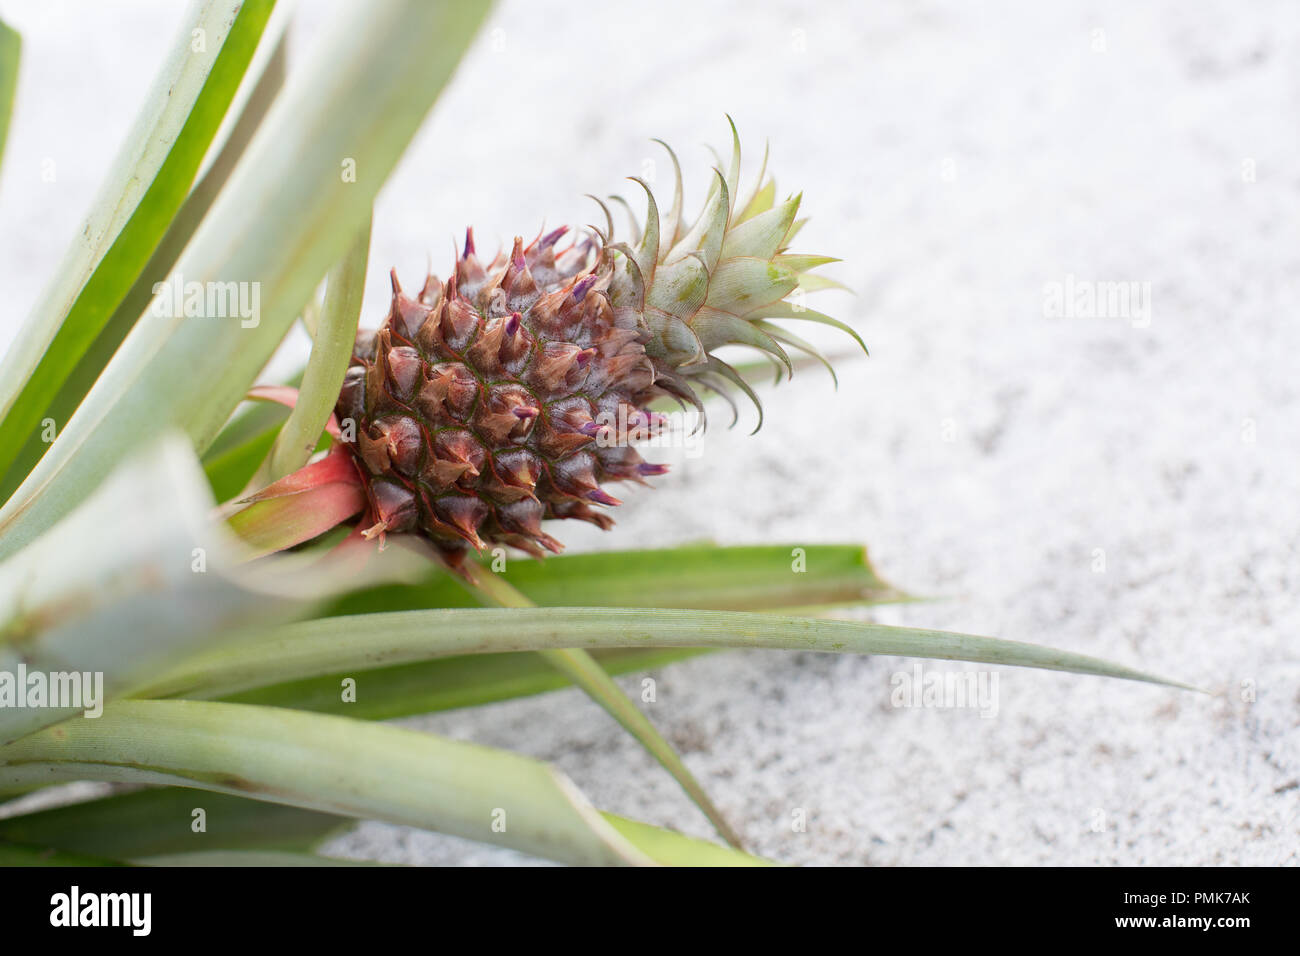 Ein Baby (mini) Ananas auf ein Werk gegen einen weißen Hintergrund. In freier Wildbahn, Ananas sind in erster Linie von Kolibris bestäubt. Stockfoto